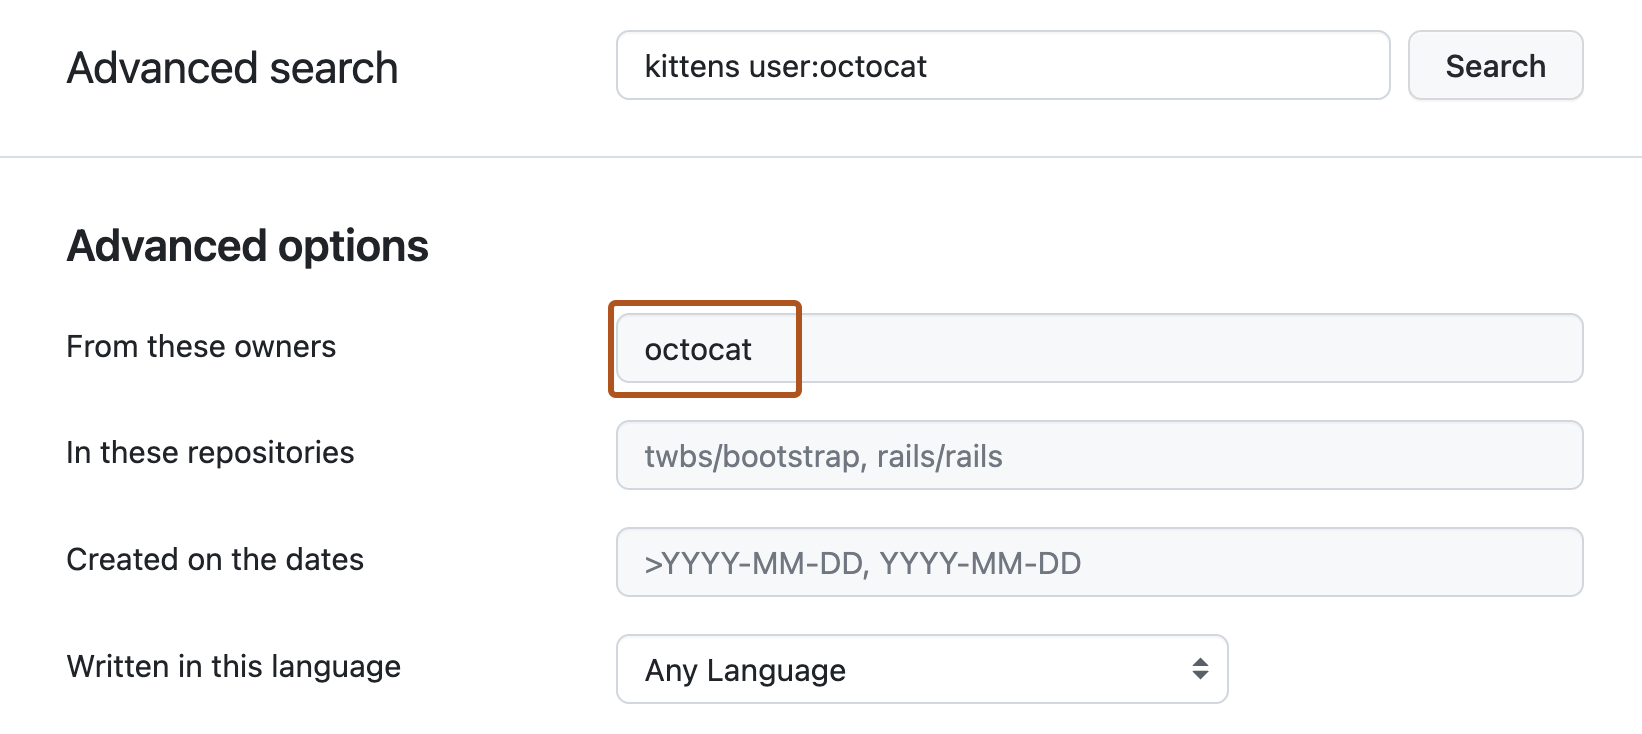 Page Recherche avancée. La barre de recherche supérieure contient la requête « chatons user:octocat ». Sous « Options avancées », la zone de texte « De ces propriétaires » contient le terme « octocat ».